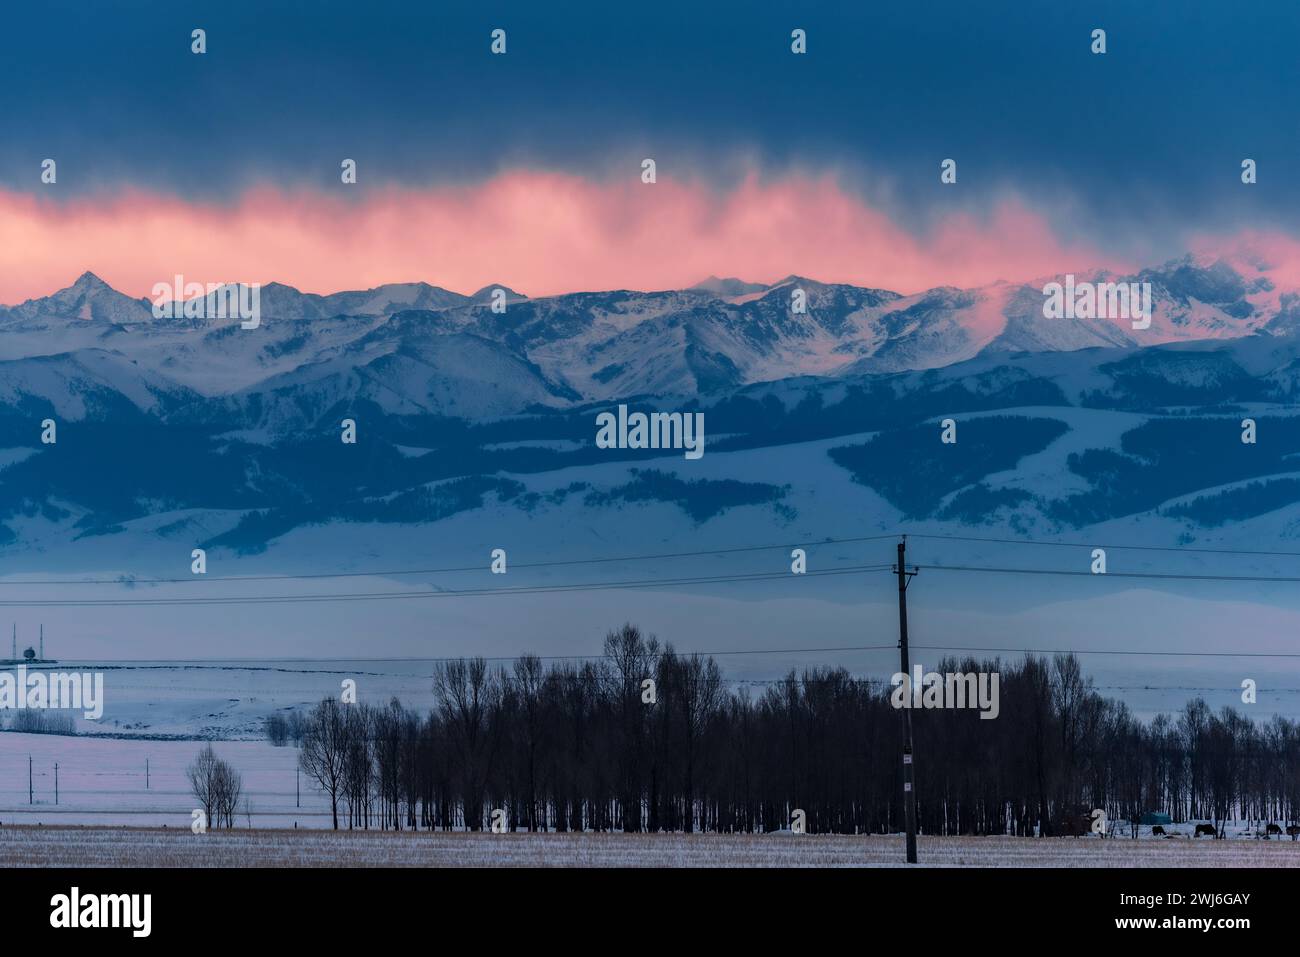 YILI, CHINA - 13. FEBRUAR 2024 - Blick auf die Tianshan-Berge auf der anderen Seite des Plateaus am Vorabend des Sonnenaufgangs in Yili, Provinz Xinjiang, CH Stockfoto